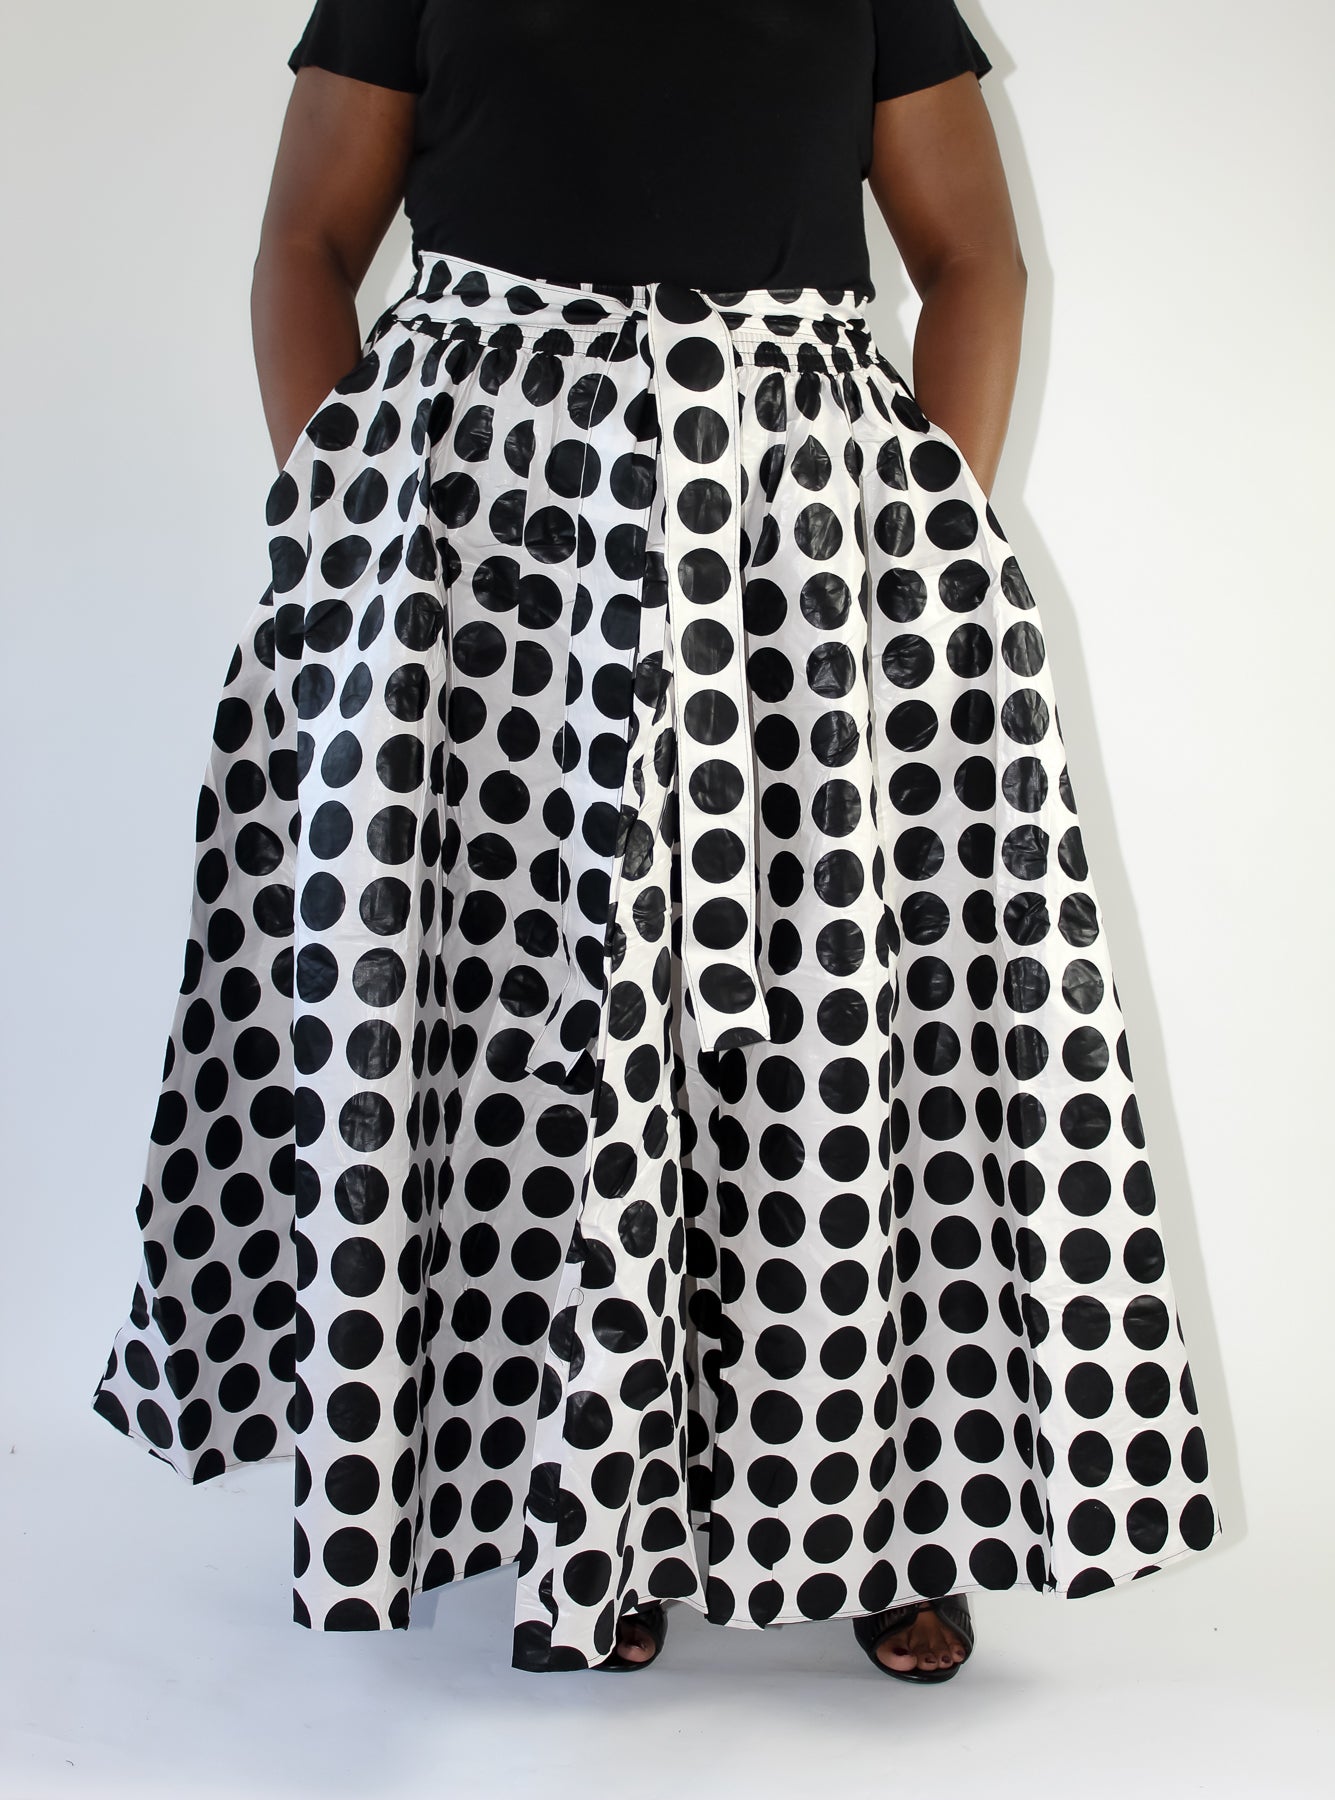 Black & White Polka Dot Skirt